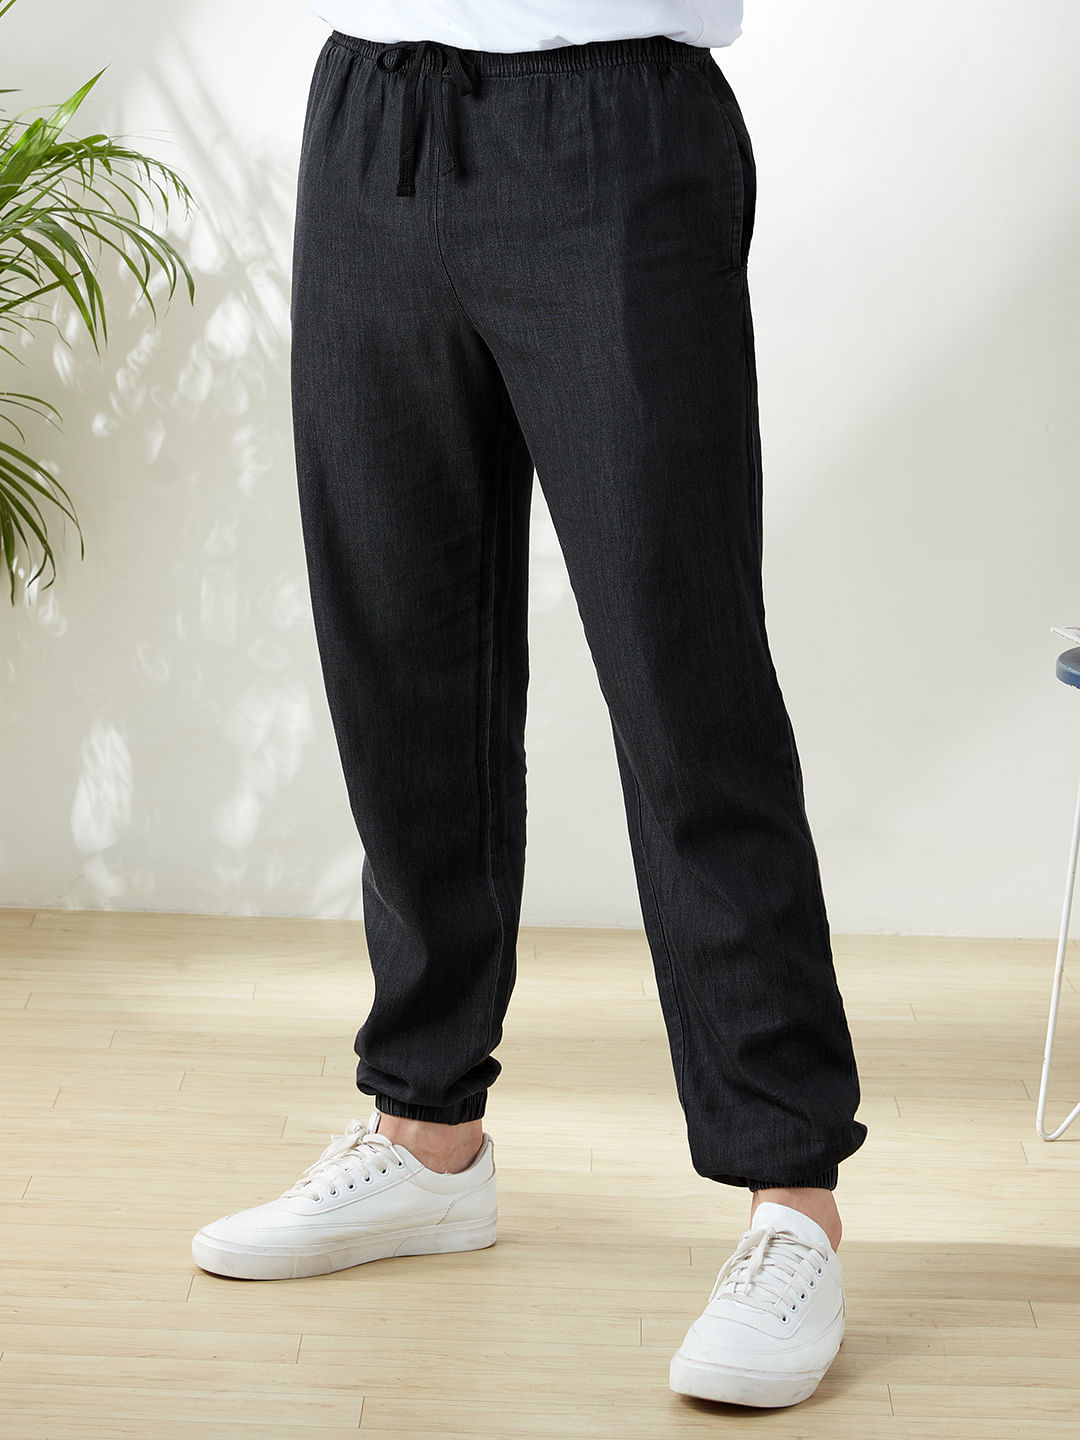 Cotton Pant for Men - Buy Men's Cotton Pants Online at The Souled Store